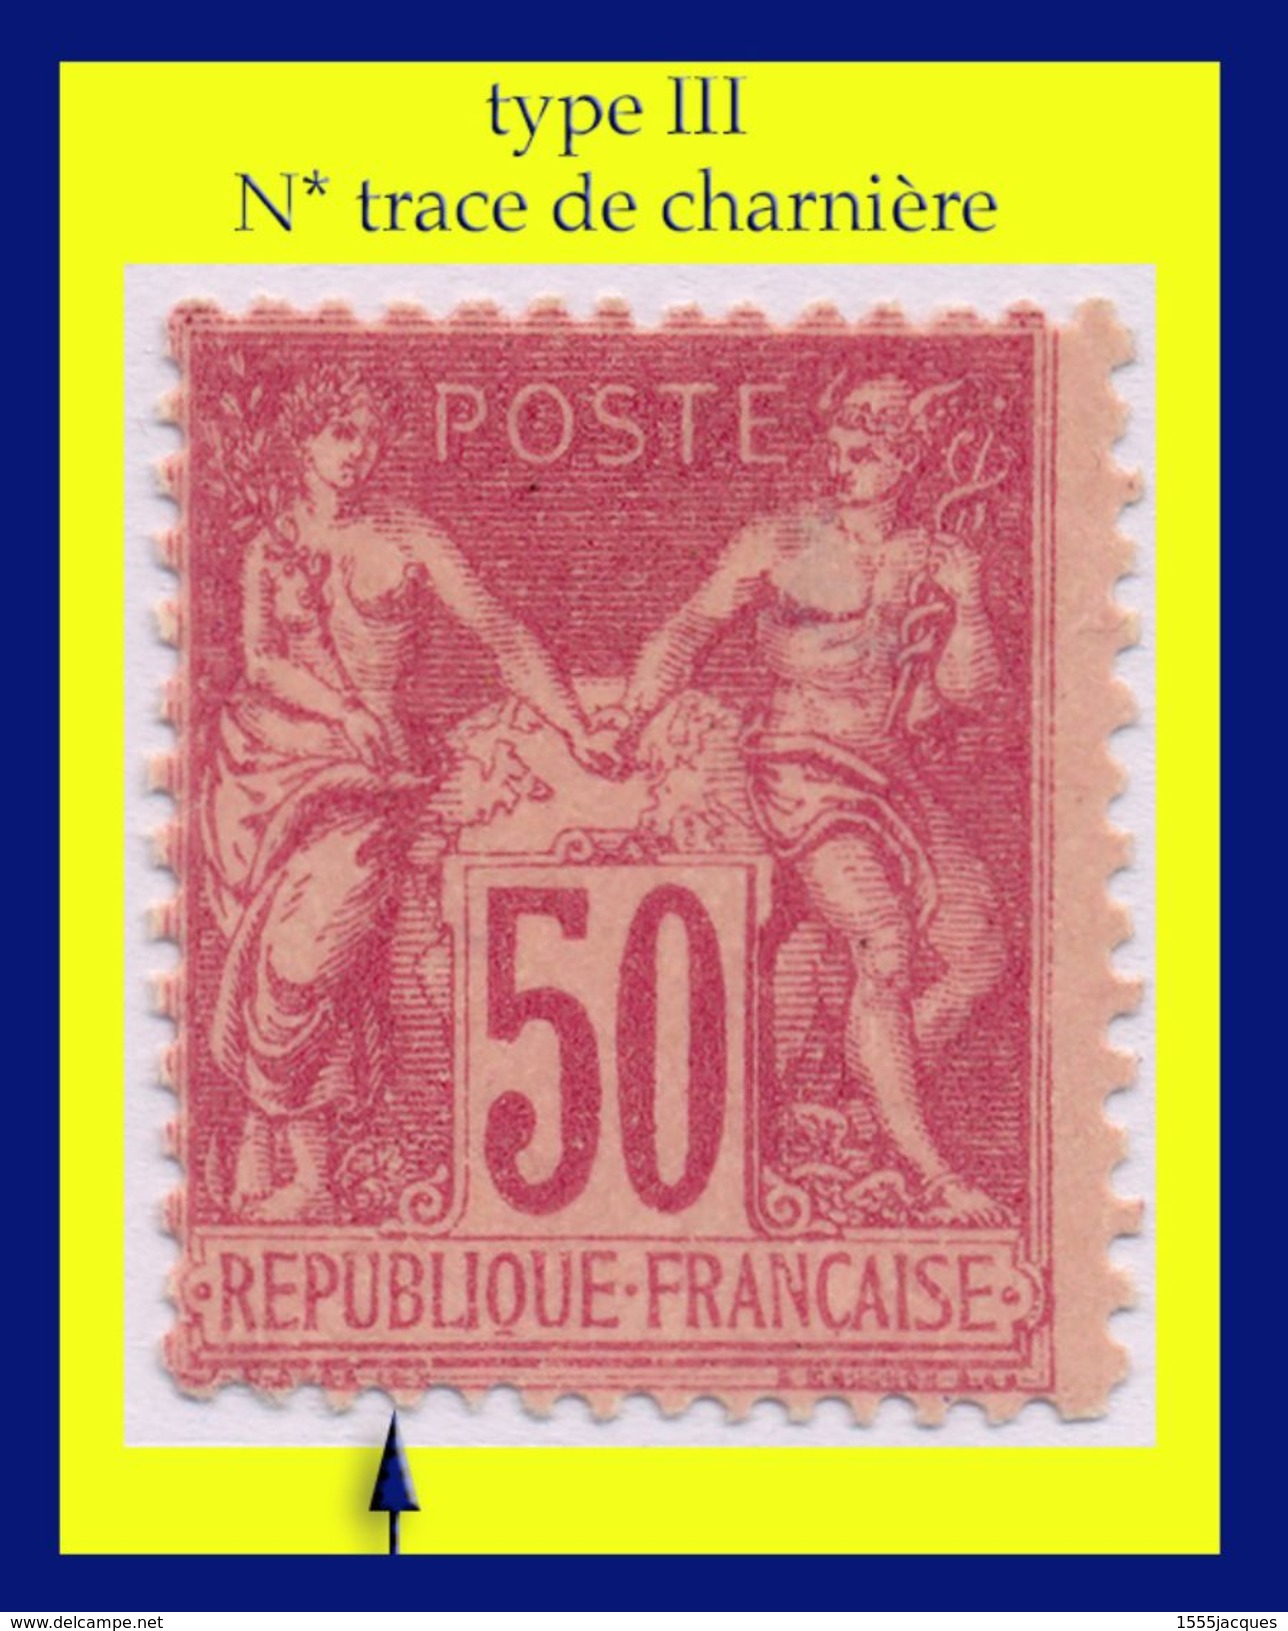 N° 104 GROUPE ALLÉGORIQUE SAGE TYPE III 1898 - N* TRACE DE CHARNIÈRE (VOIR VERSO) - - 1898-1900 Sage (Type III)